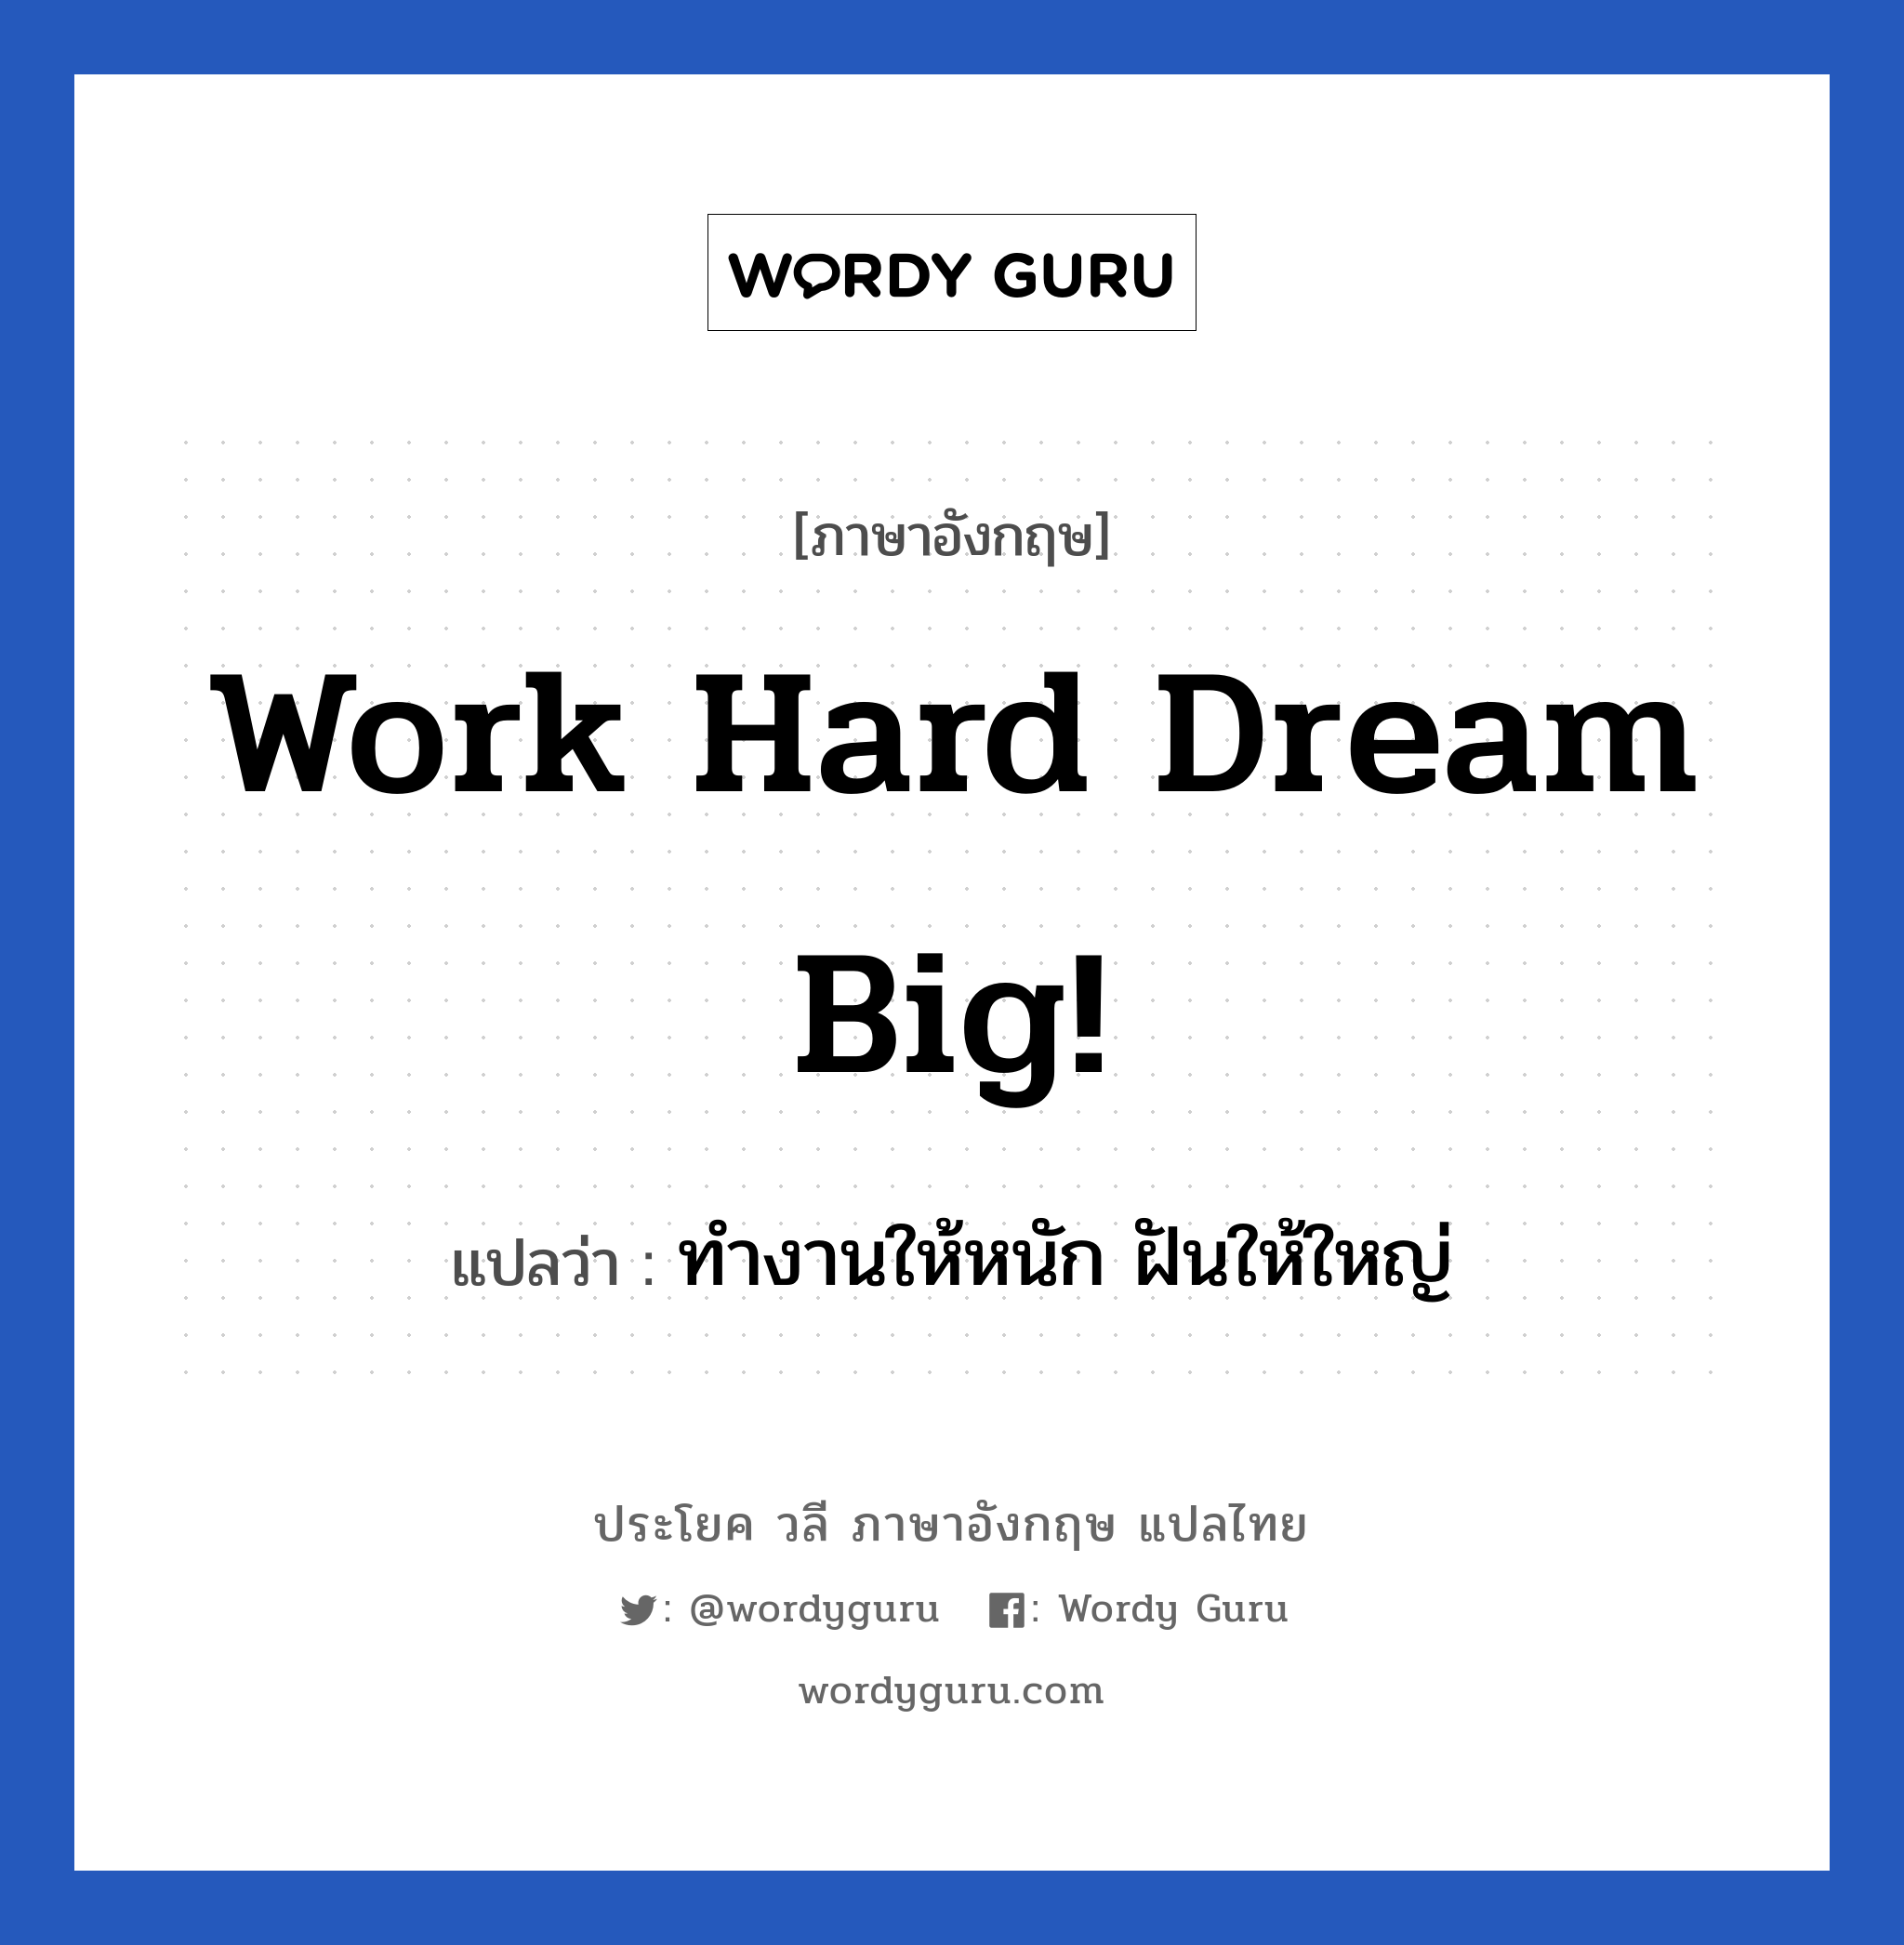 Work hard Dream big! แปลว่า? เป็นประโยคในกลุ่มประเภท ในที่ทำงาน, วลีภาษาอังกฤษ Work hard Dream big! แปลว่า ทำงานให้หนัก ฝันให้ใหญ่ หมวด ในที่ทำงาน